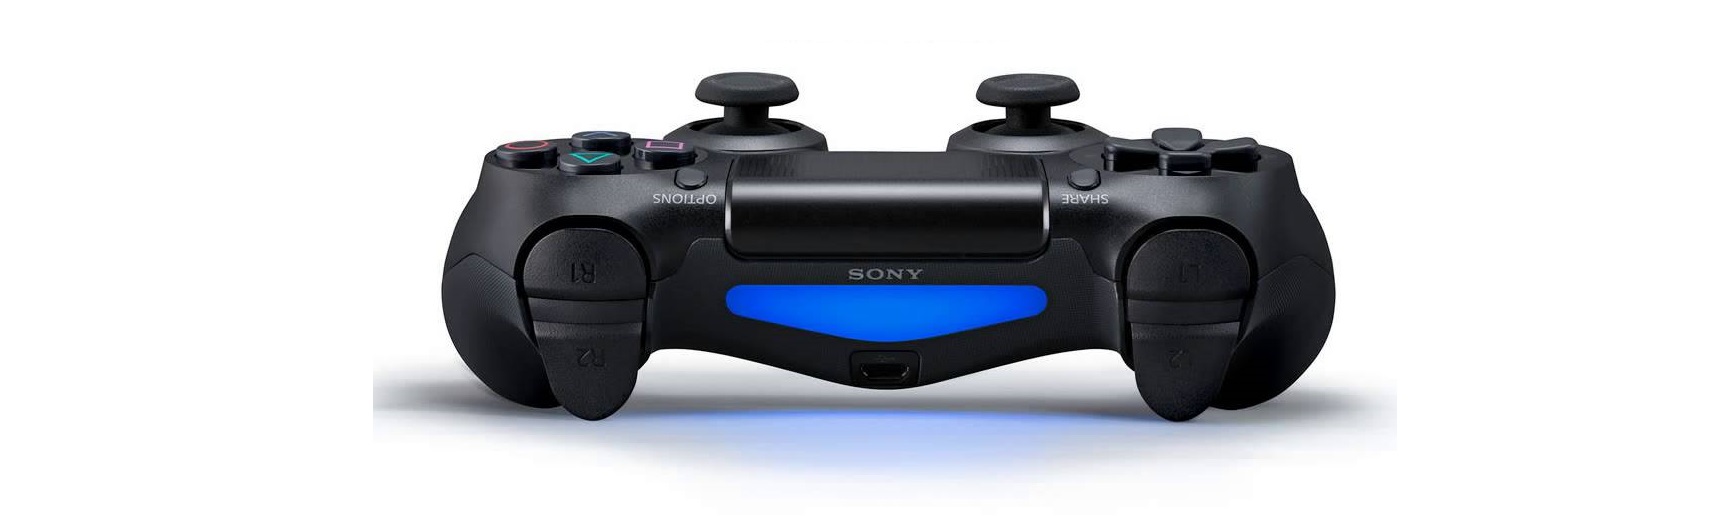 GamePad Sony PS4 DUALSHOCK 4 Wireless Controller Red Camouflage CUH-ZCT2G30 tích hợp cảm biến chuyển động cho game thích hợp